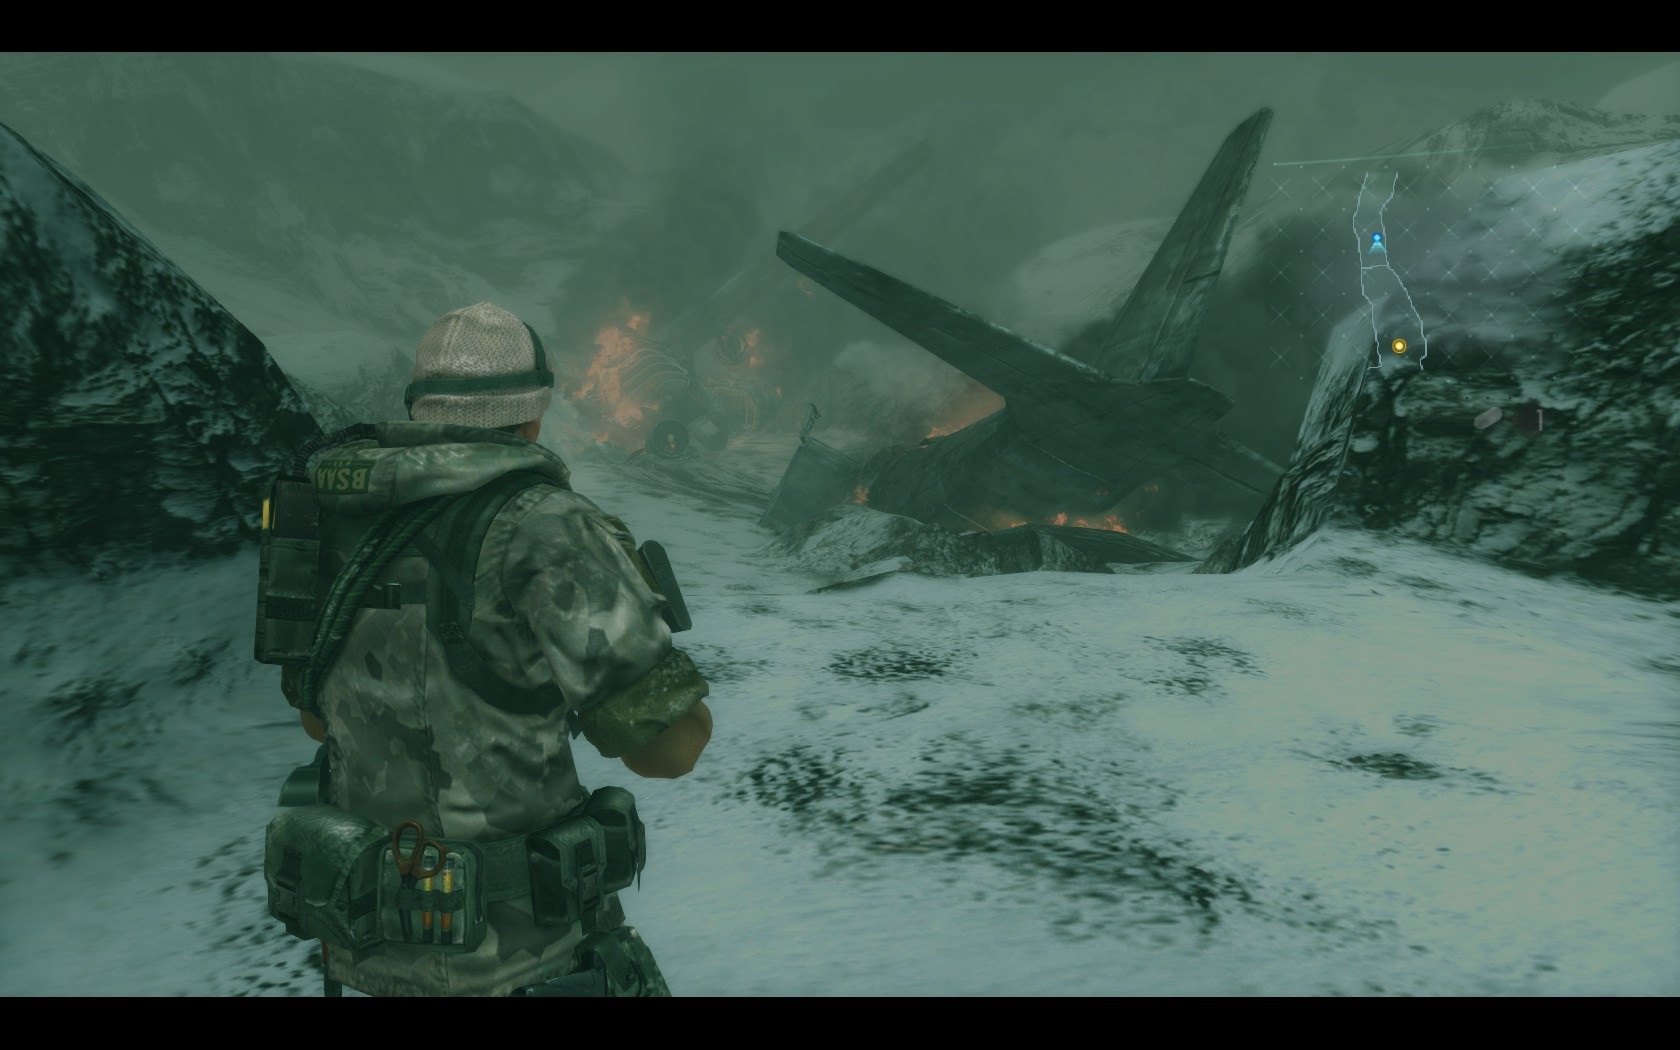 Resident Evil Revelations (PC) Zasneen prostredie mohlo ponka aspo nejak vonos, no nestalo sa tak.